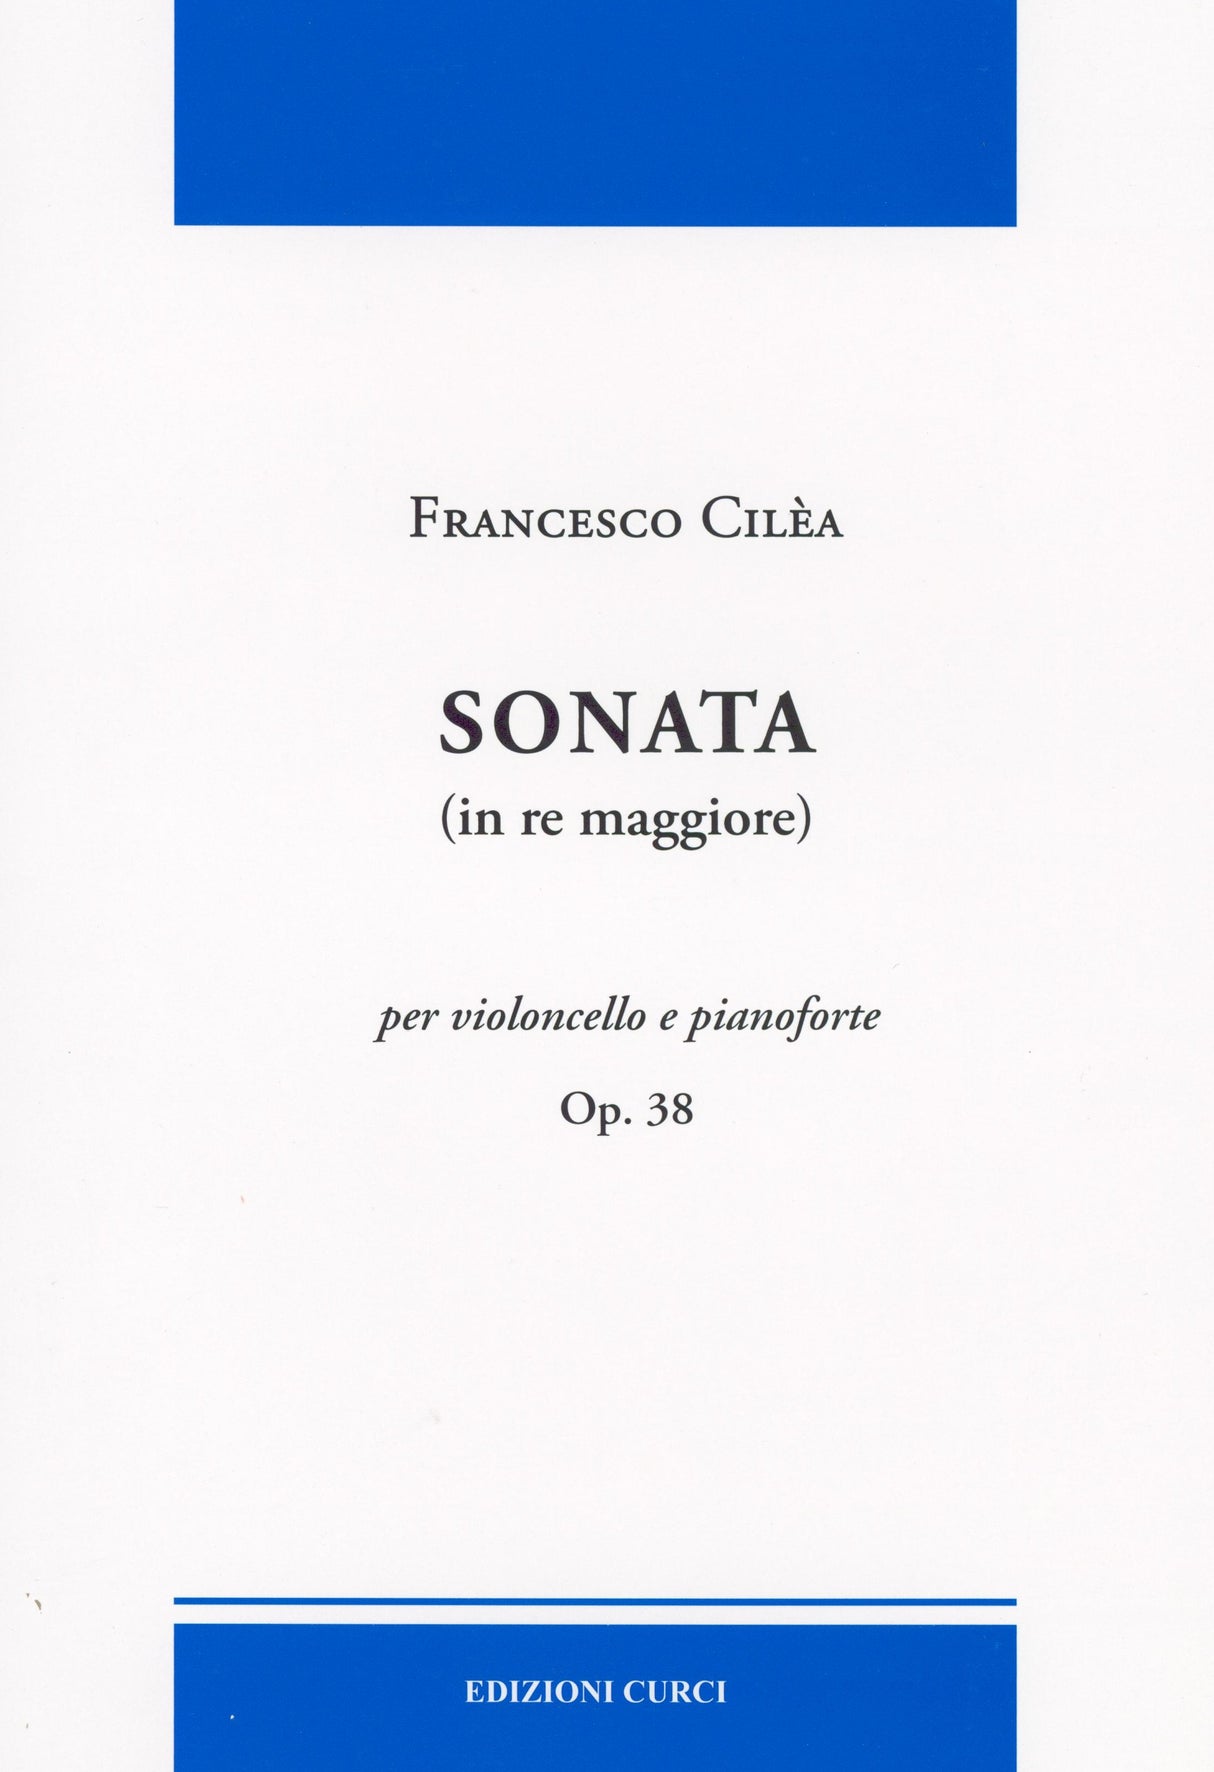 Cilea: Cello Sonata in D Major, Op. 38